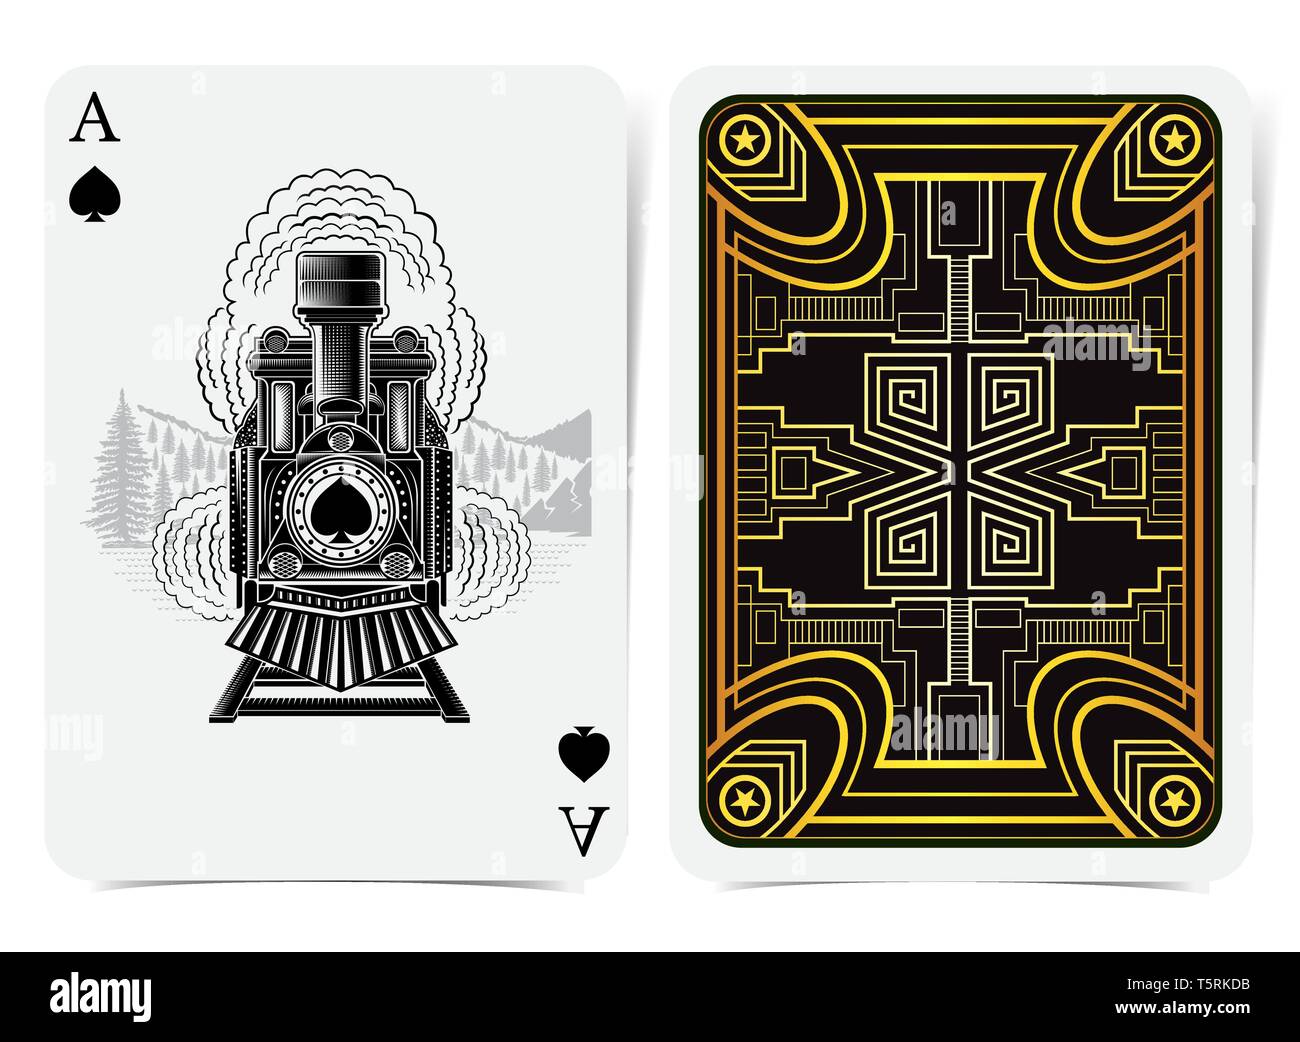 Ace of Spades mit Spaten inside vintage Zug in Gravur Stil und zurück mit Golden art deco Gatsby Muster auf schwarzen Anzug. Vektor Karte templa Stock Vektor